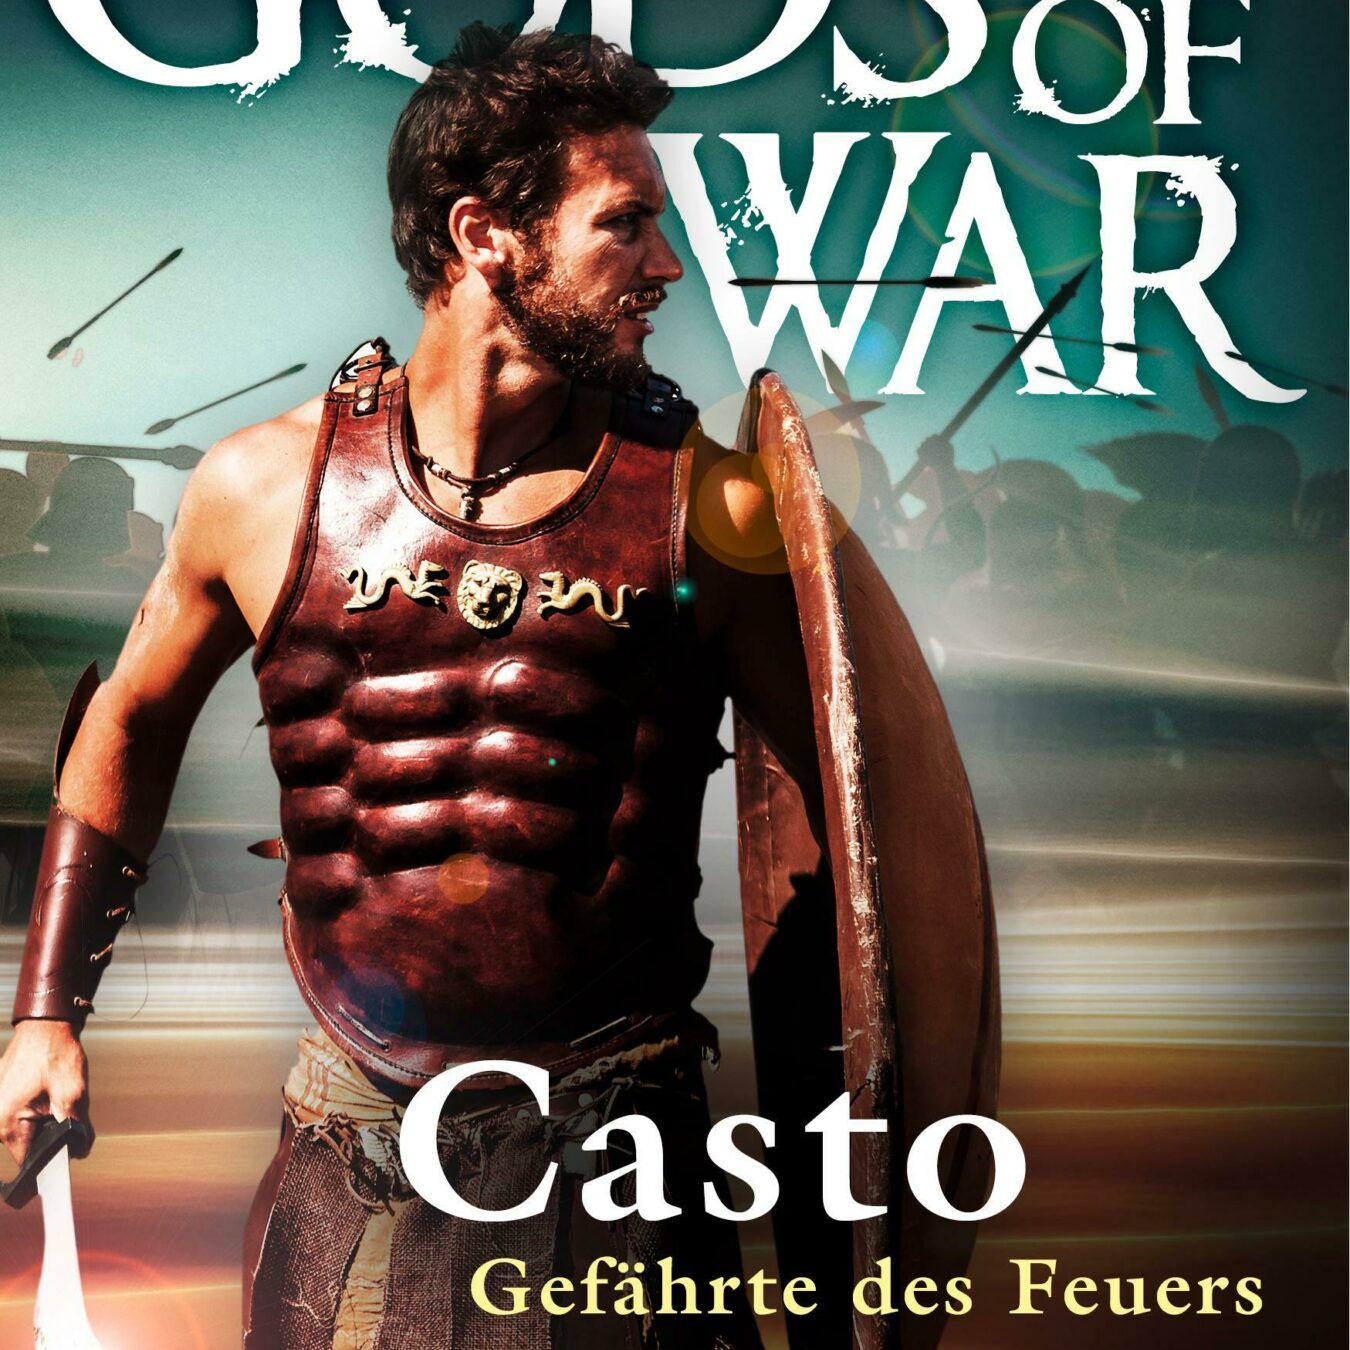 Buchcover von Casto - Gefährte des Feuers (Gods of War 1)